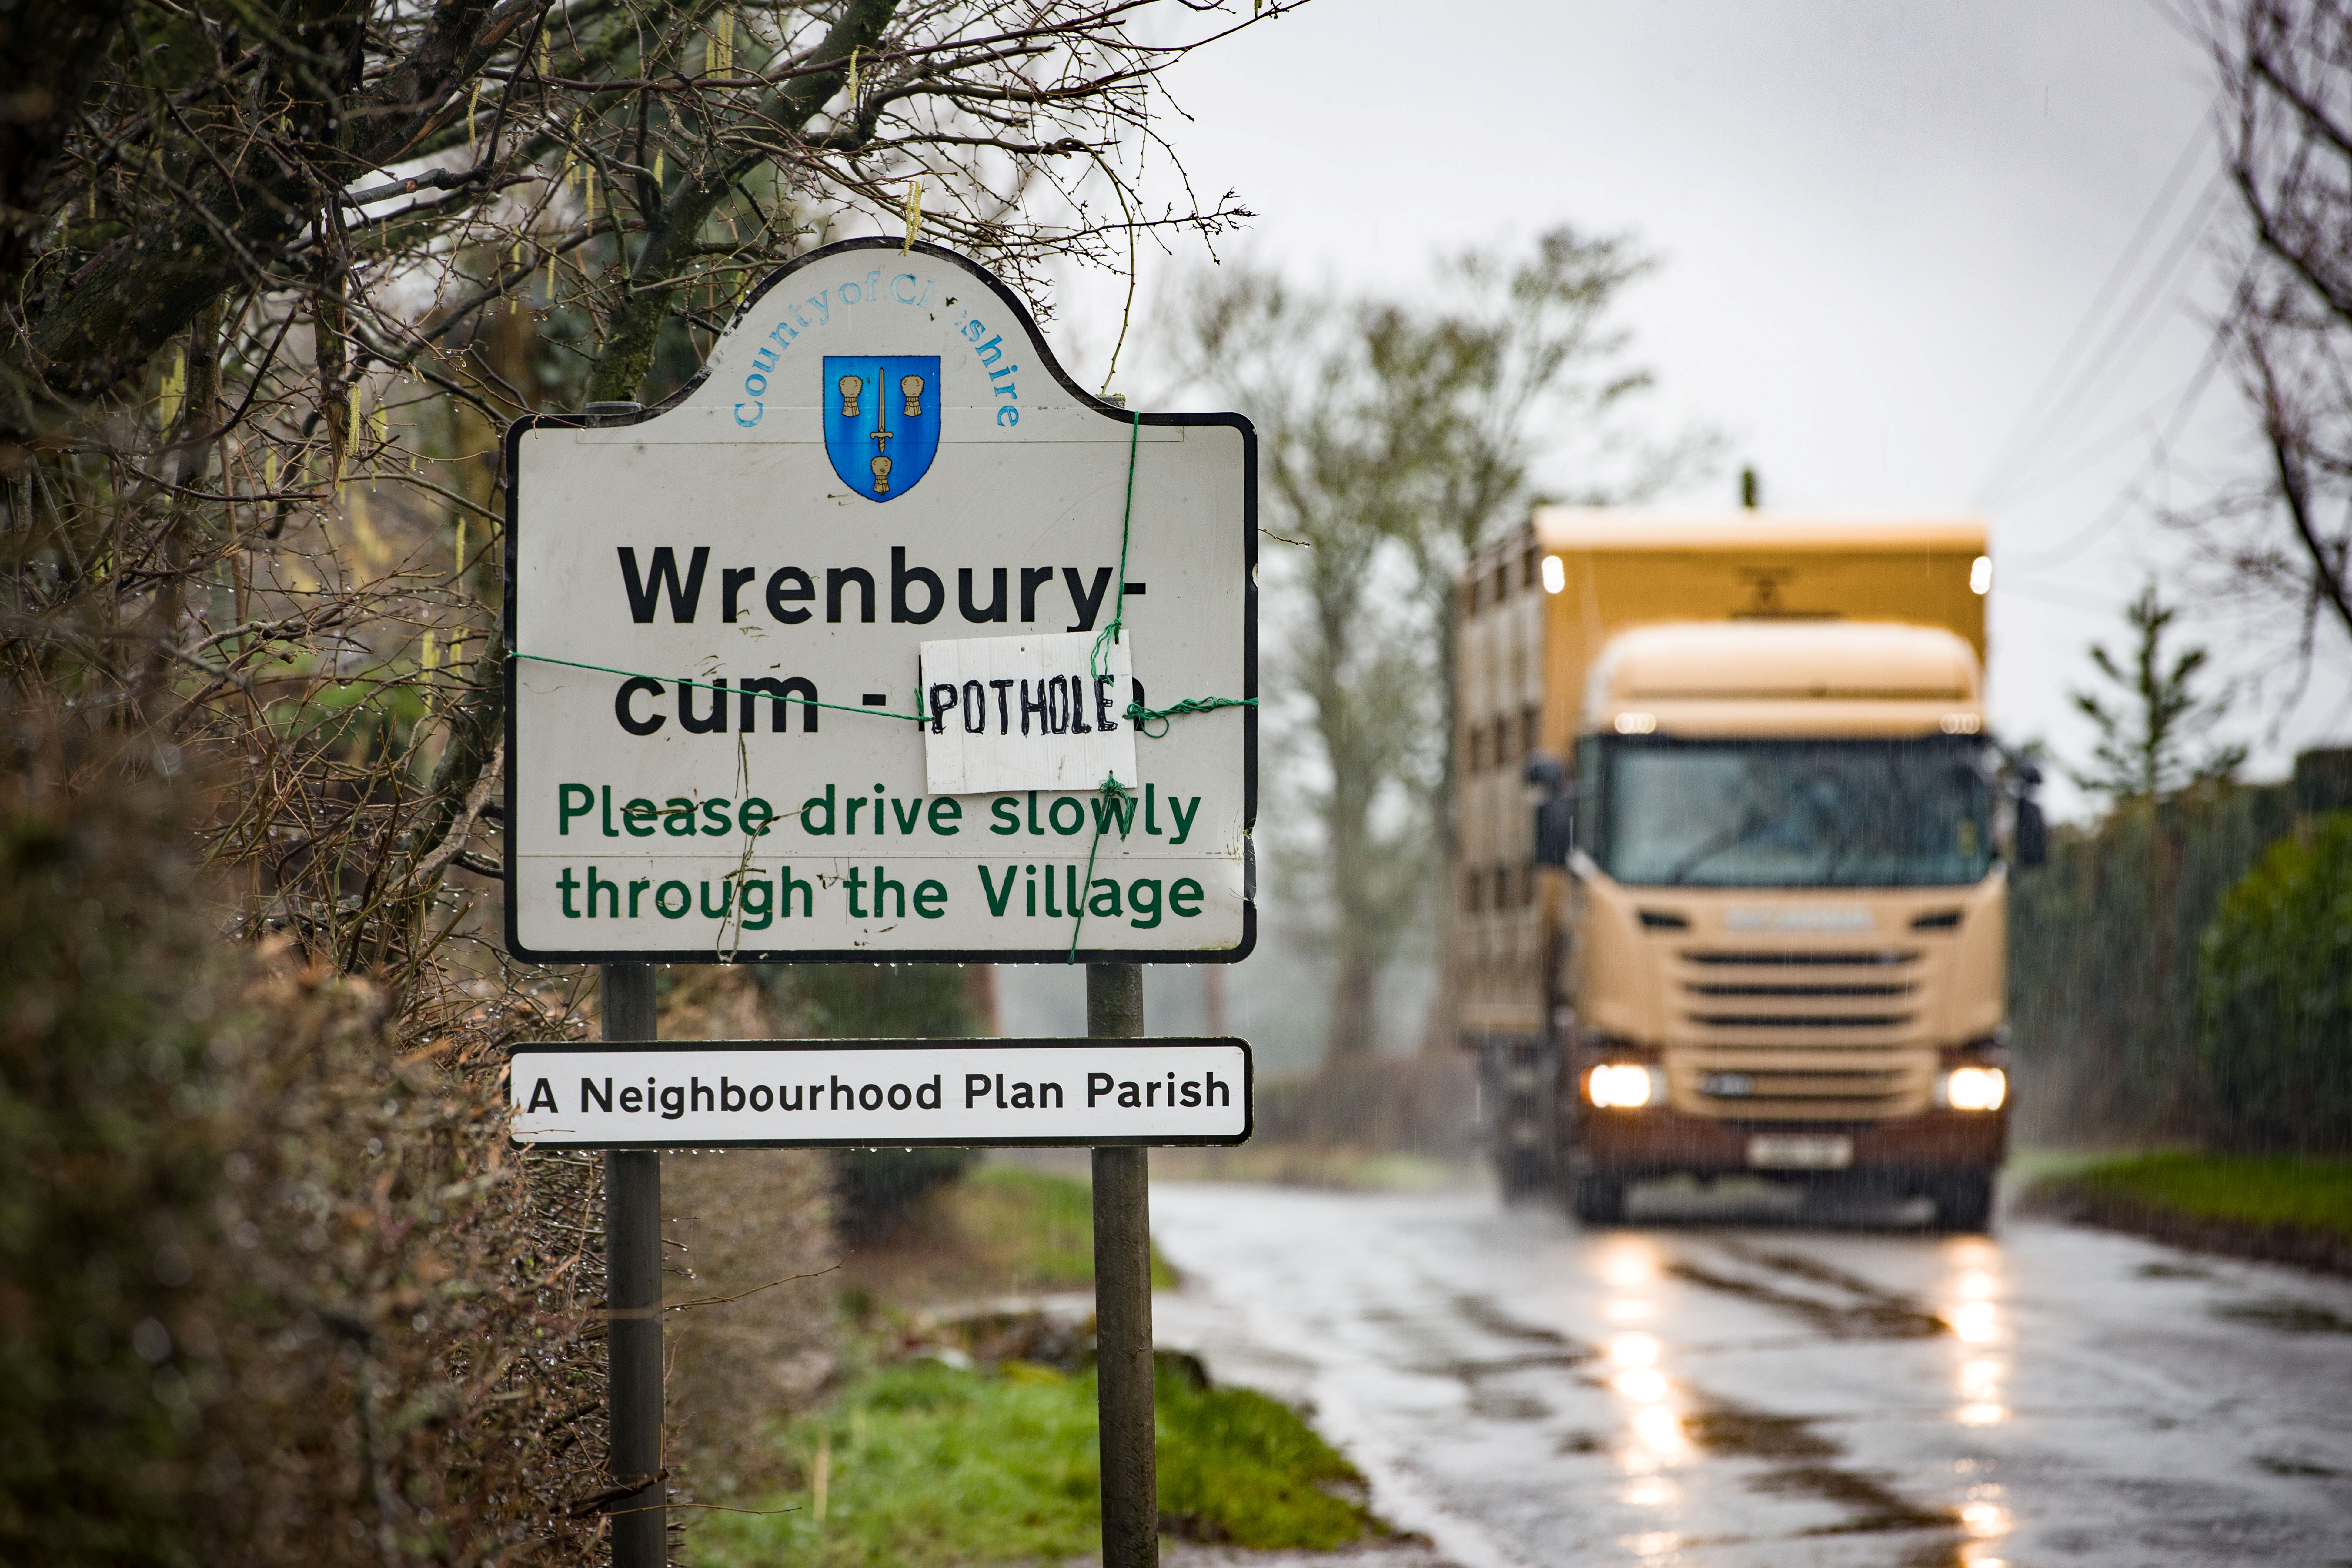 Jokers haben das Willkommensschild für Wrenbury-cum-Frith in Wrenbury-cum-Pothole geändert